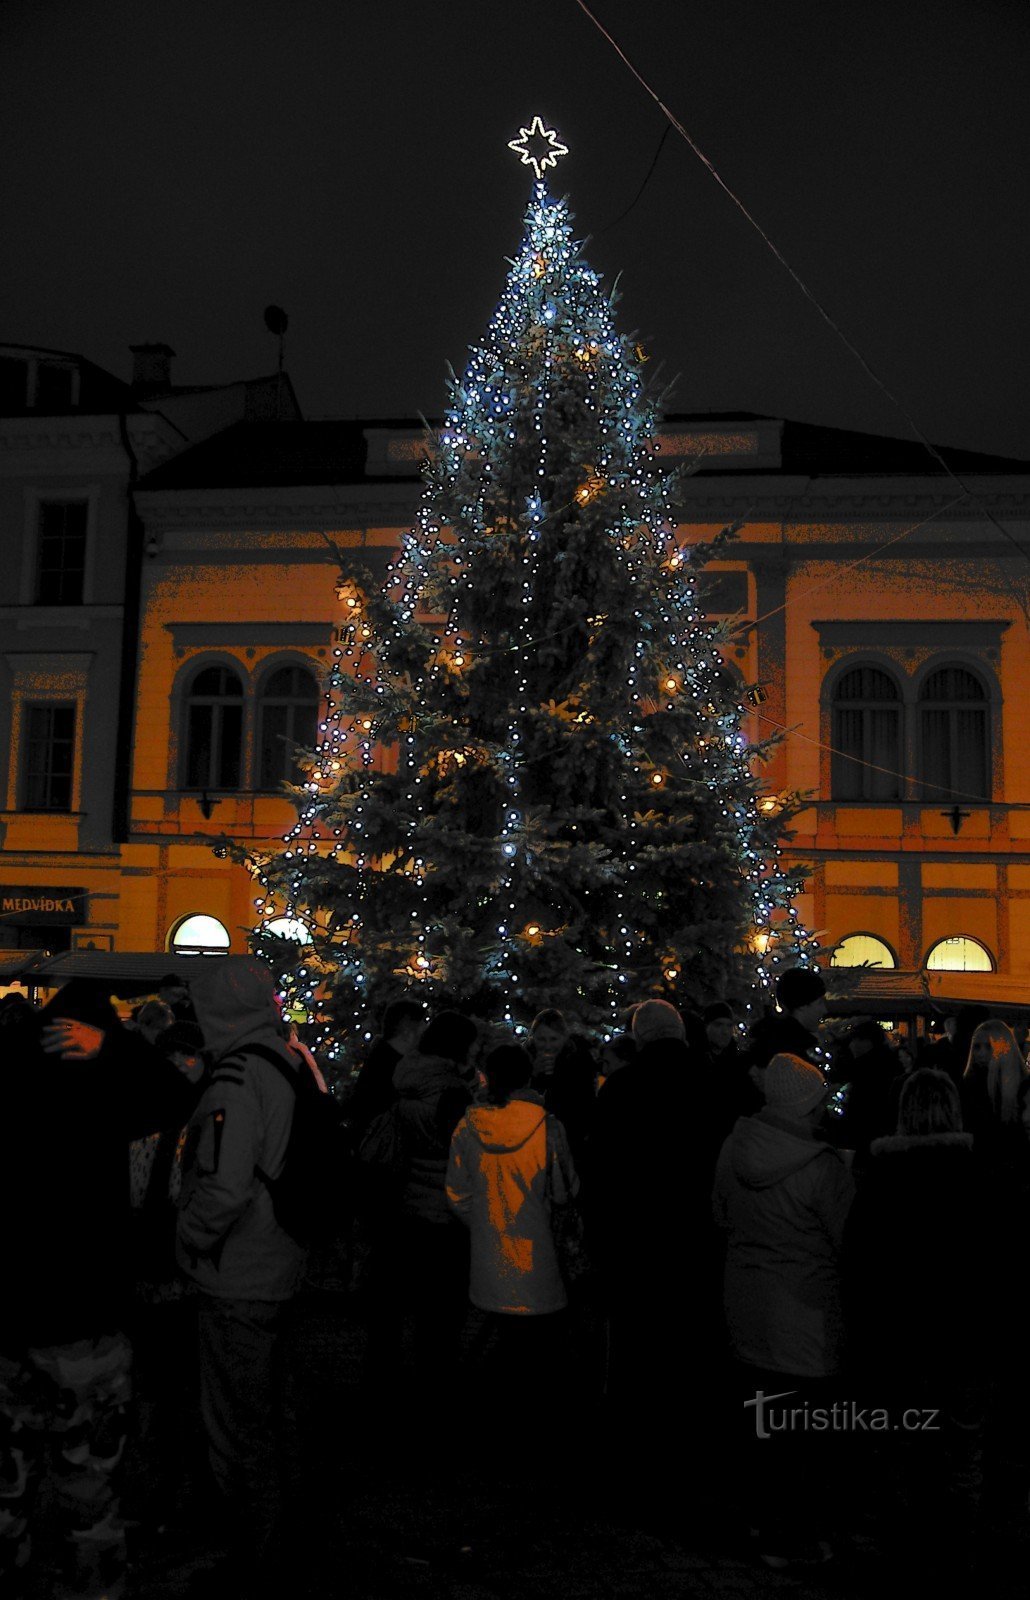 Chợ phiên Giáng sinh "At Točák" hoặc Šumper